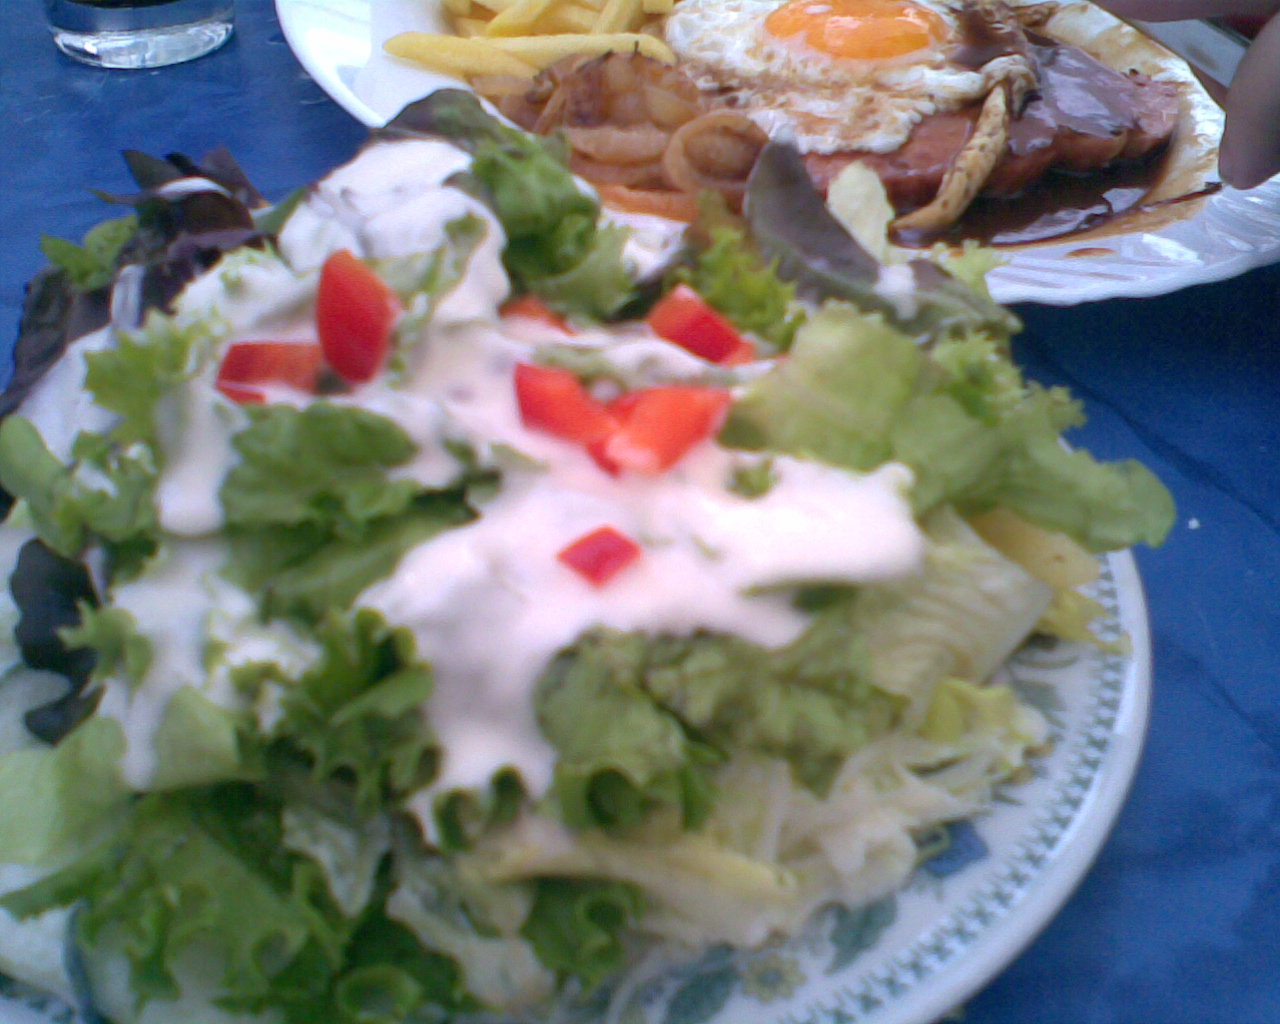 Fleischkäse mit Spiegelei, Pommes und Salat für 6,50 Euro